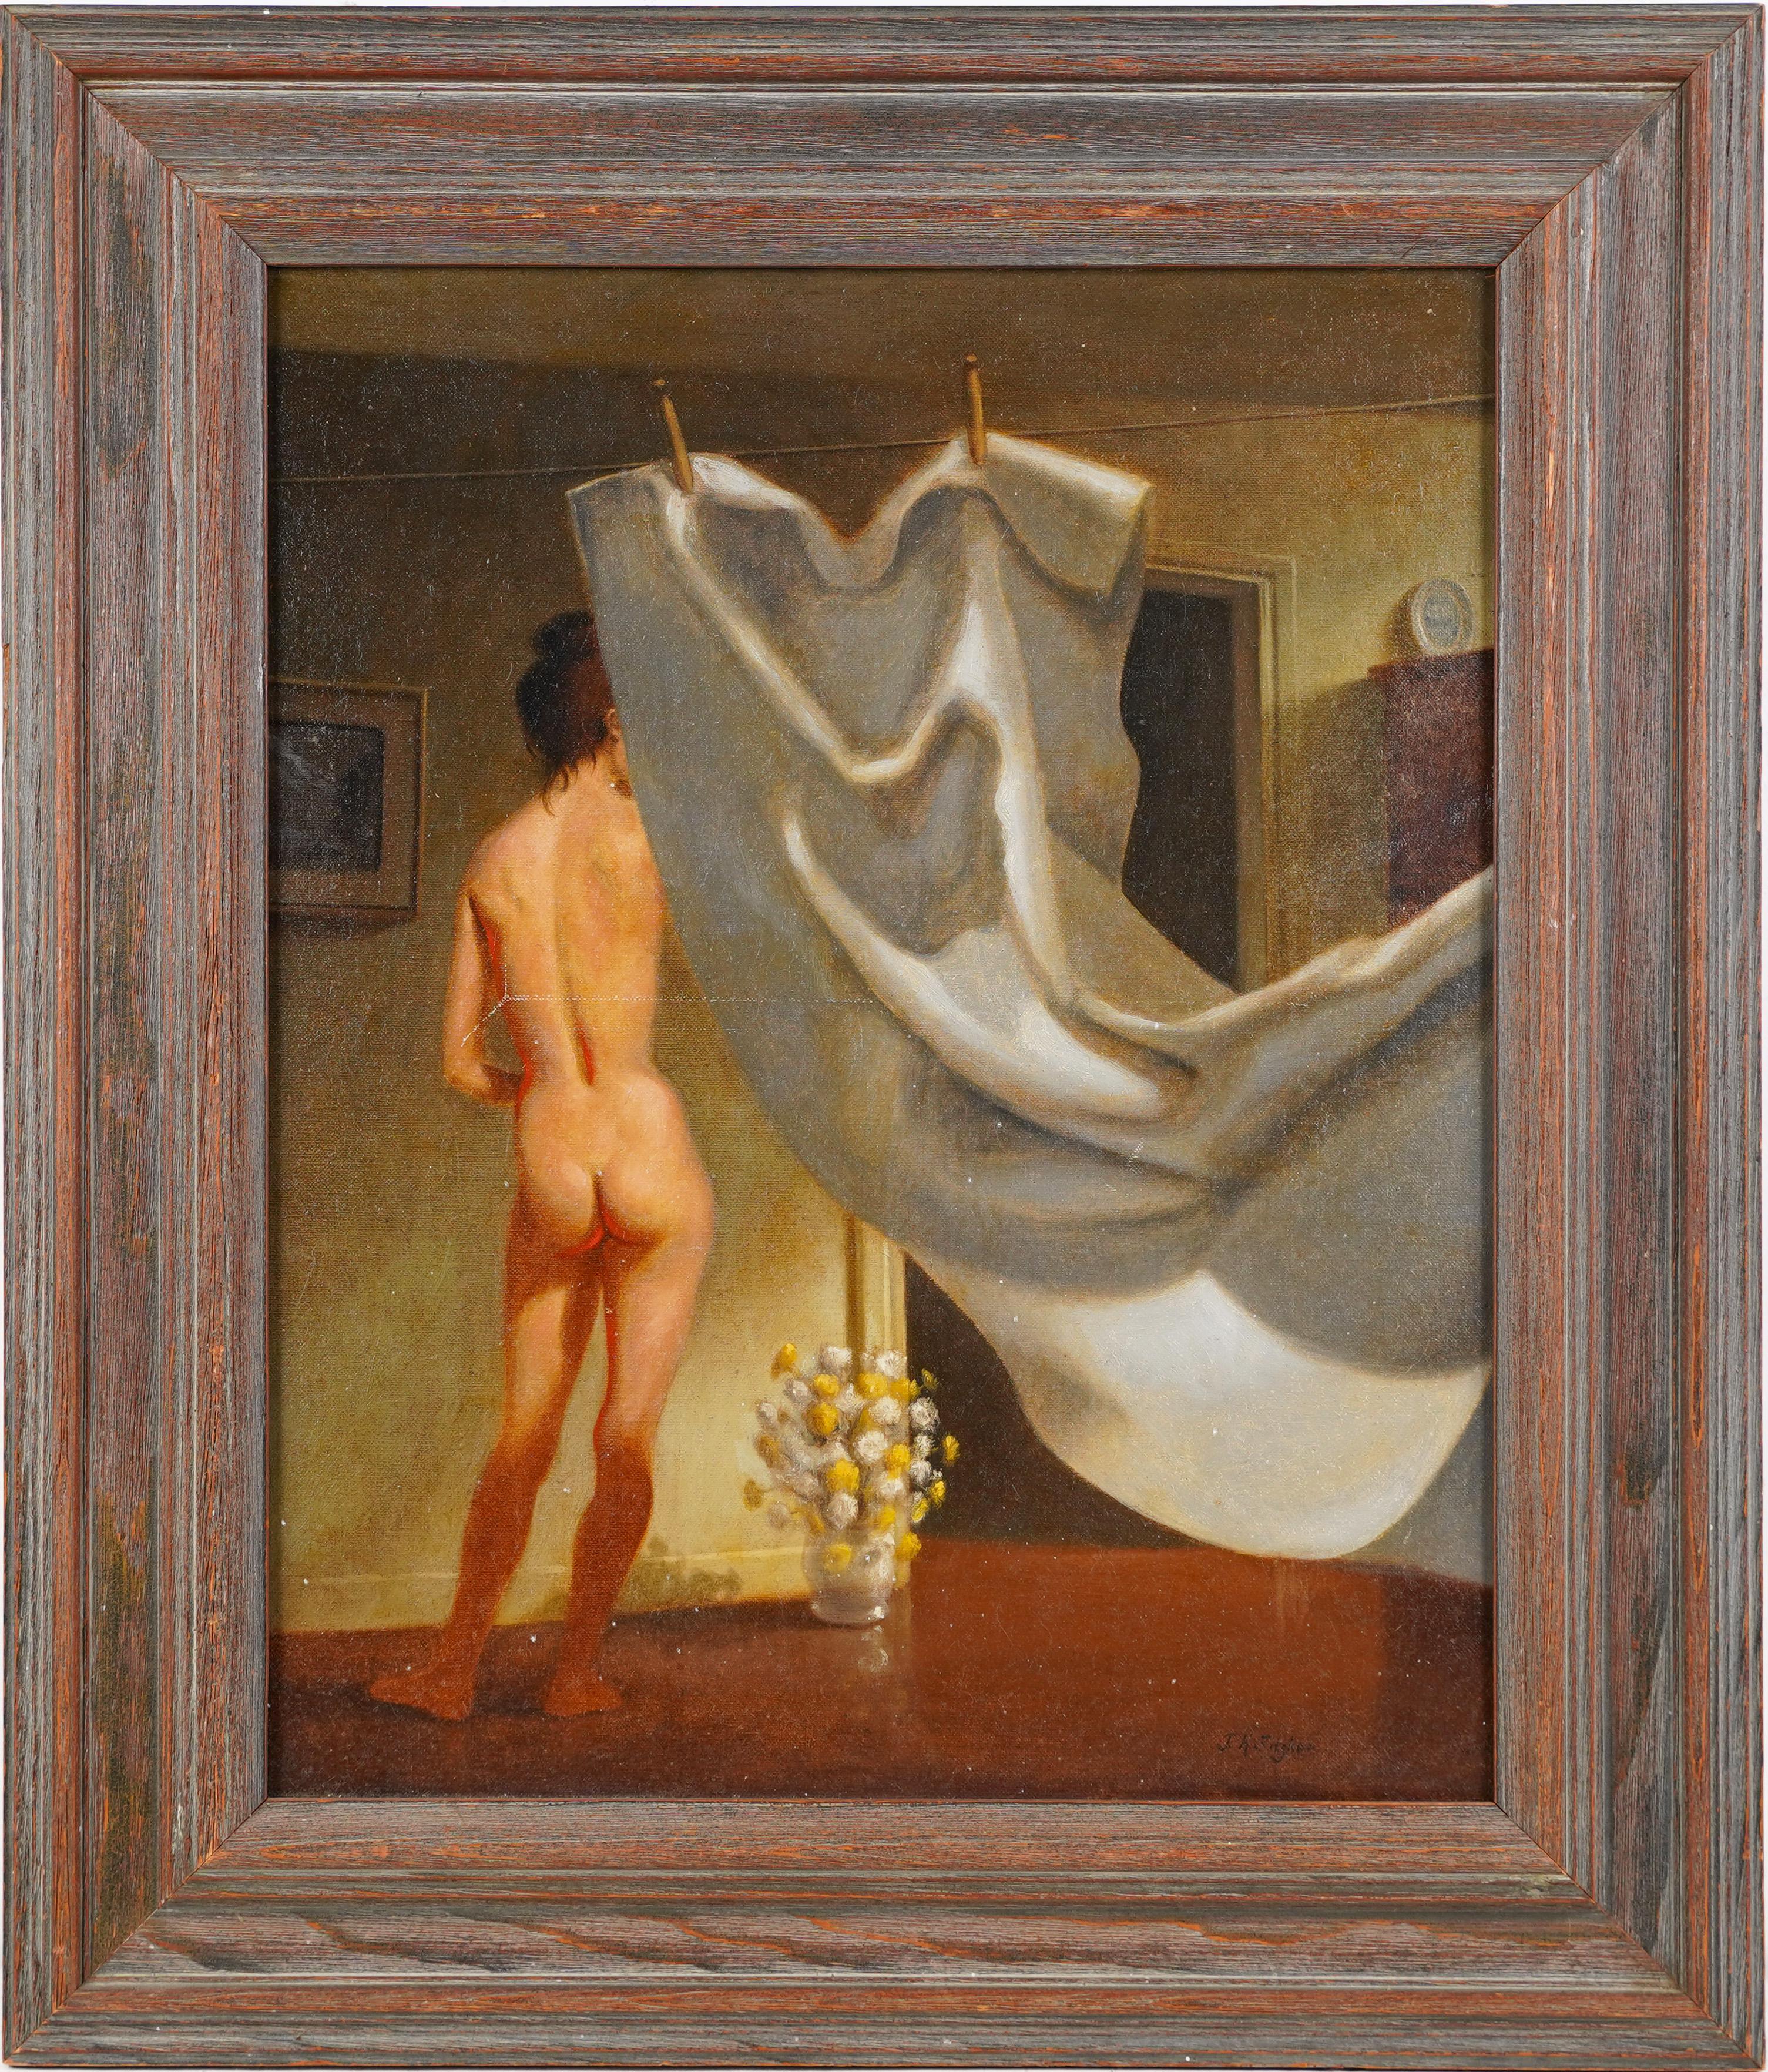 Amerikanische Schule, signiert Trompe L'Oeil, nacktes Frauenporträt, Ölgemälde – Painting von Unknown